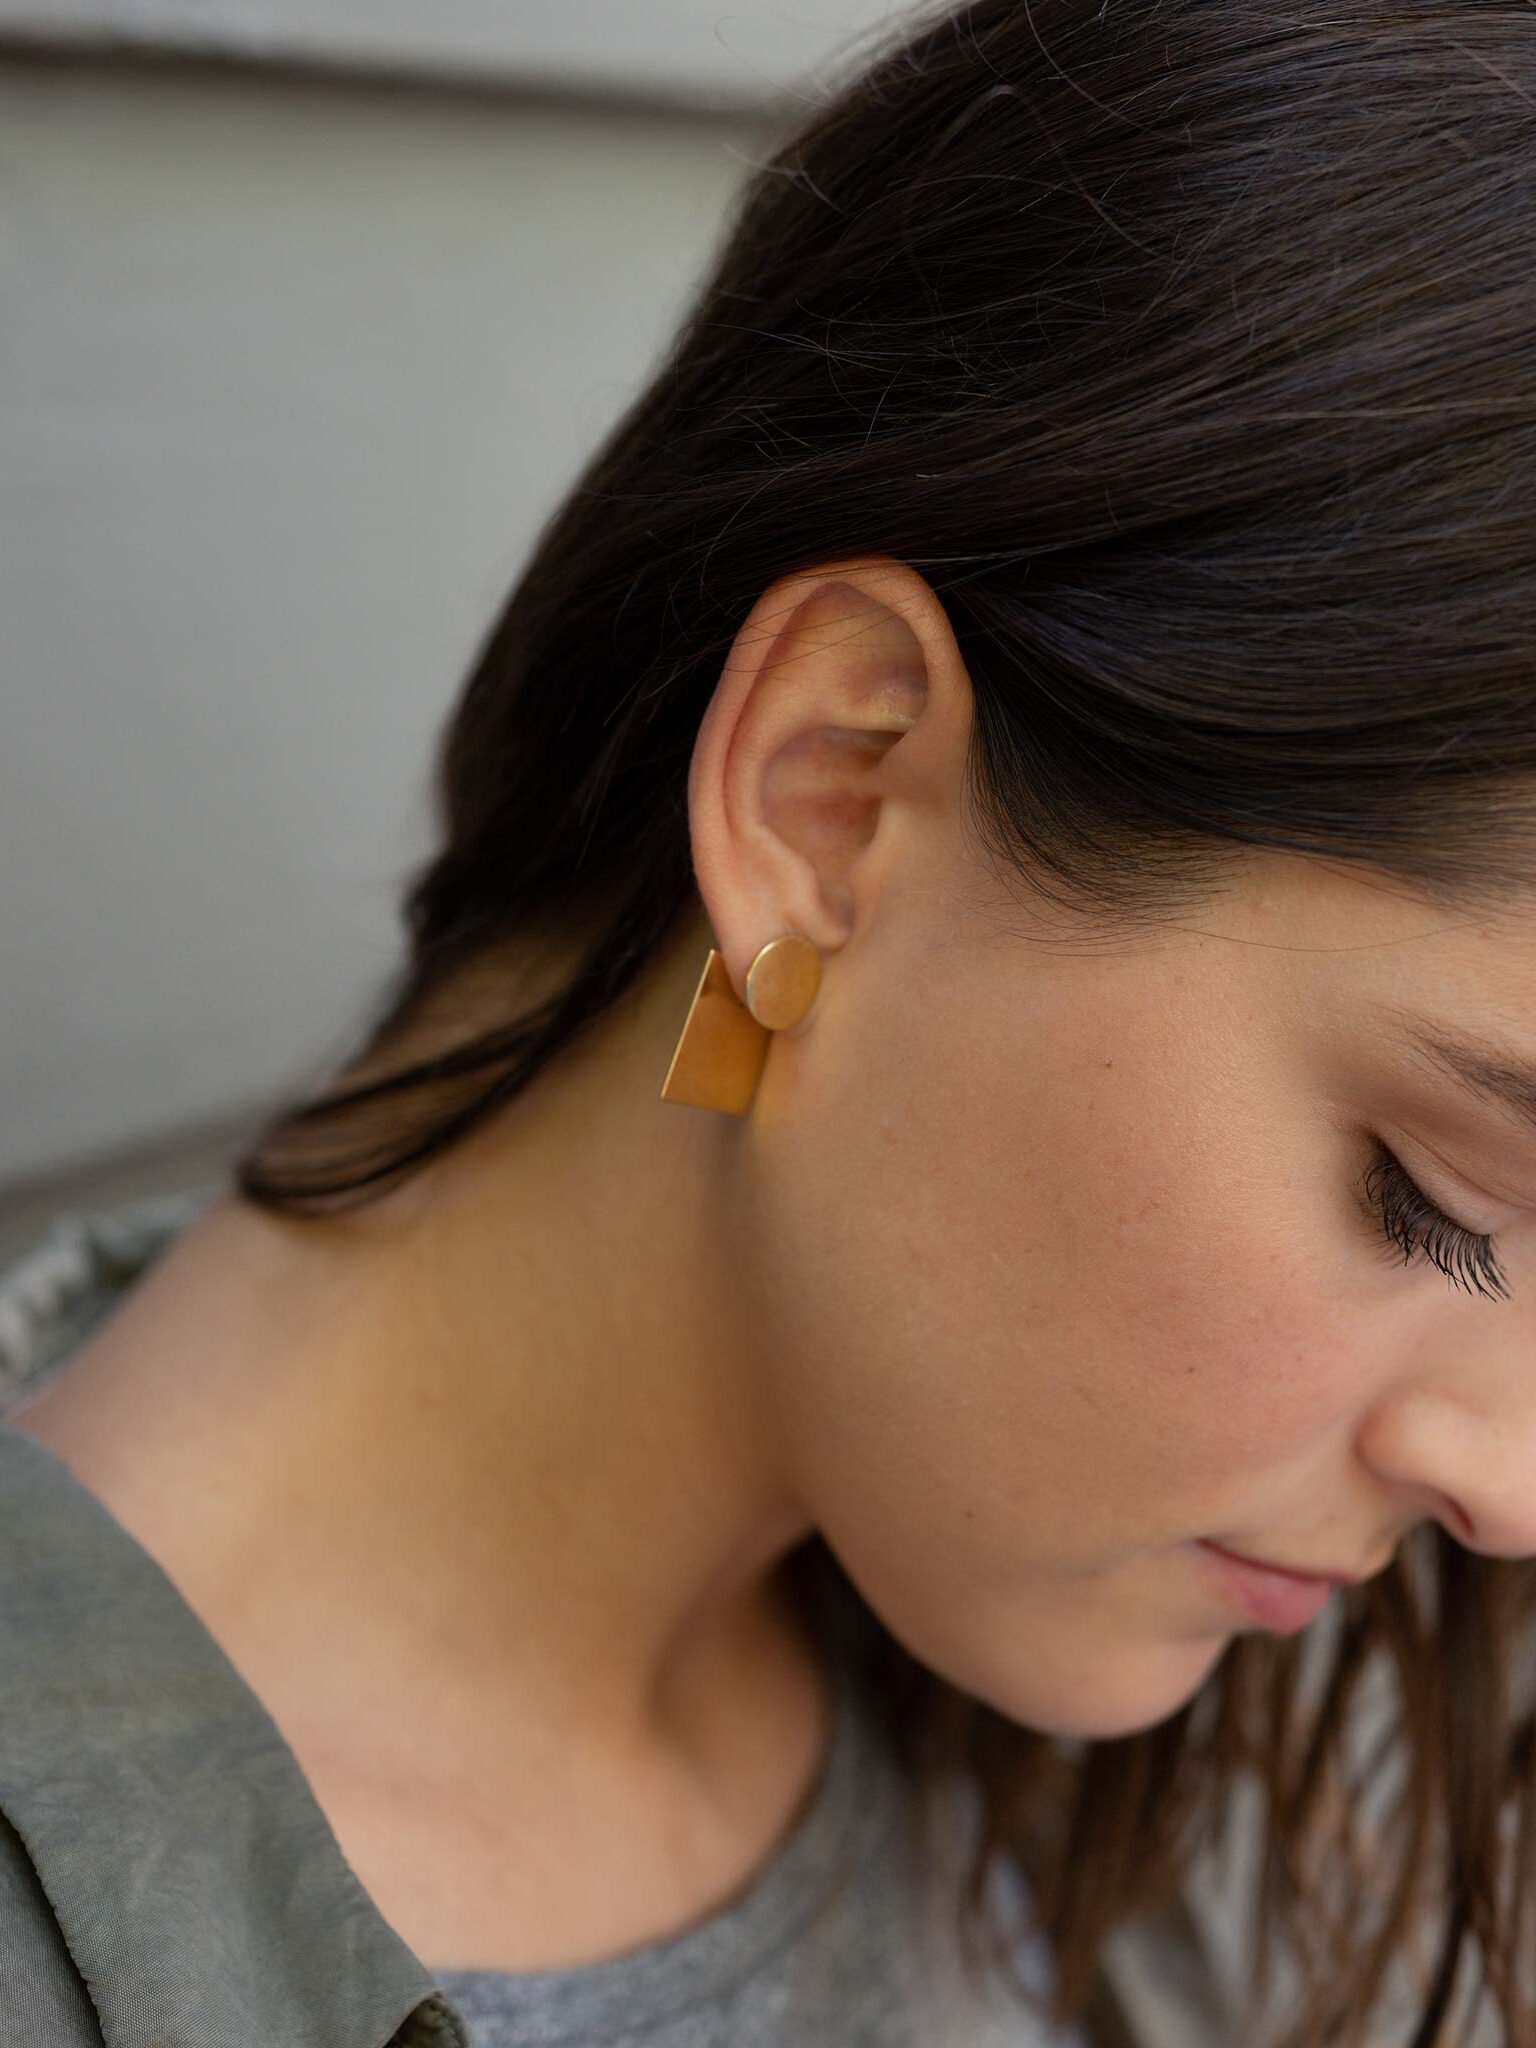 Brass earrings in a model's ear.